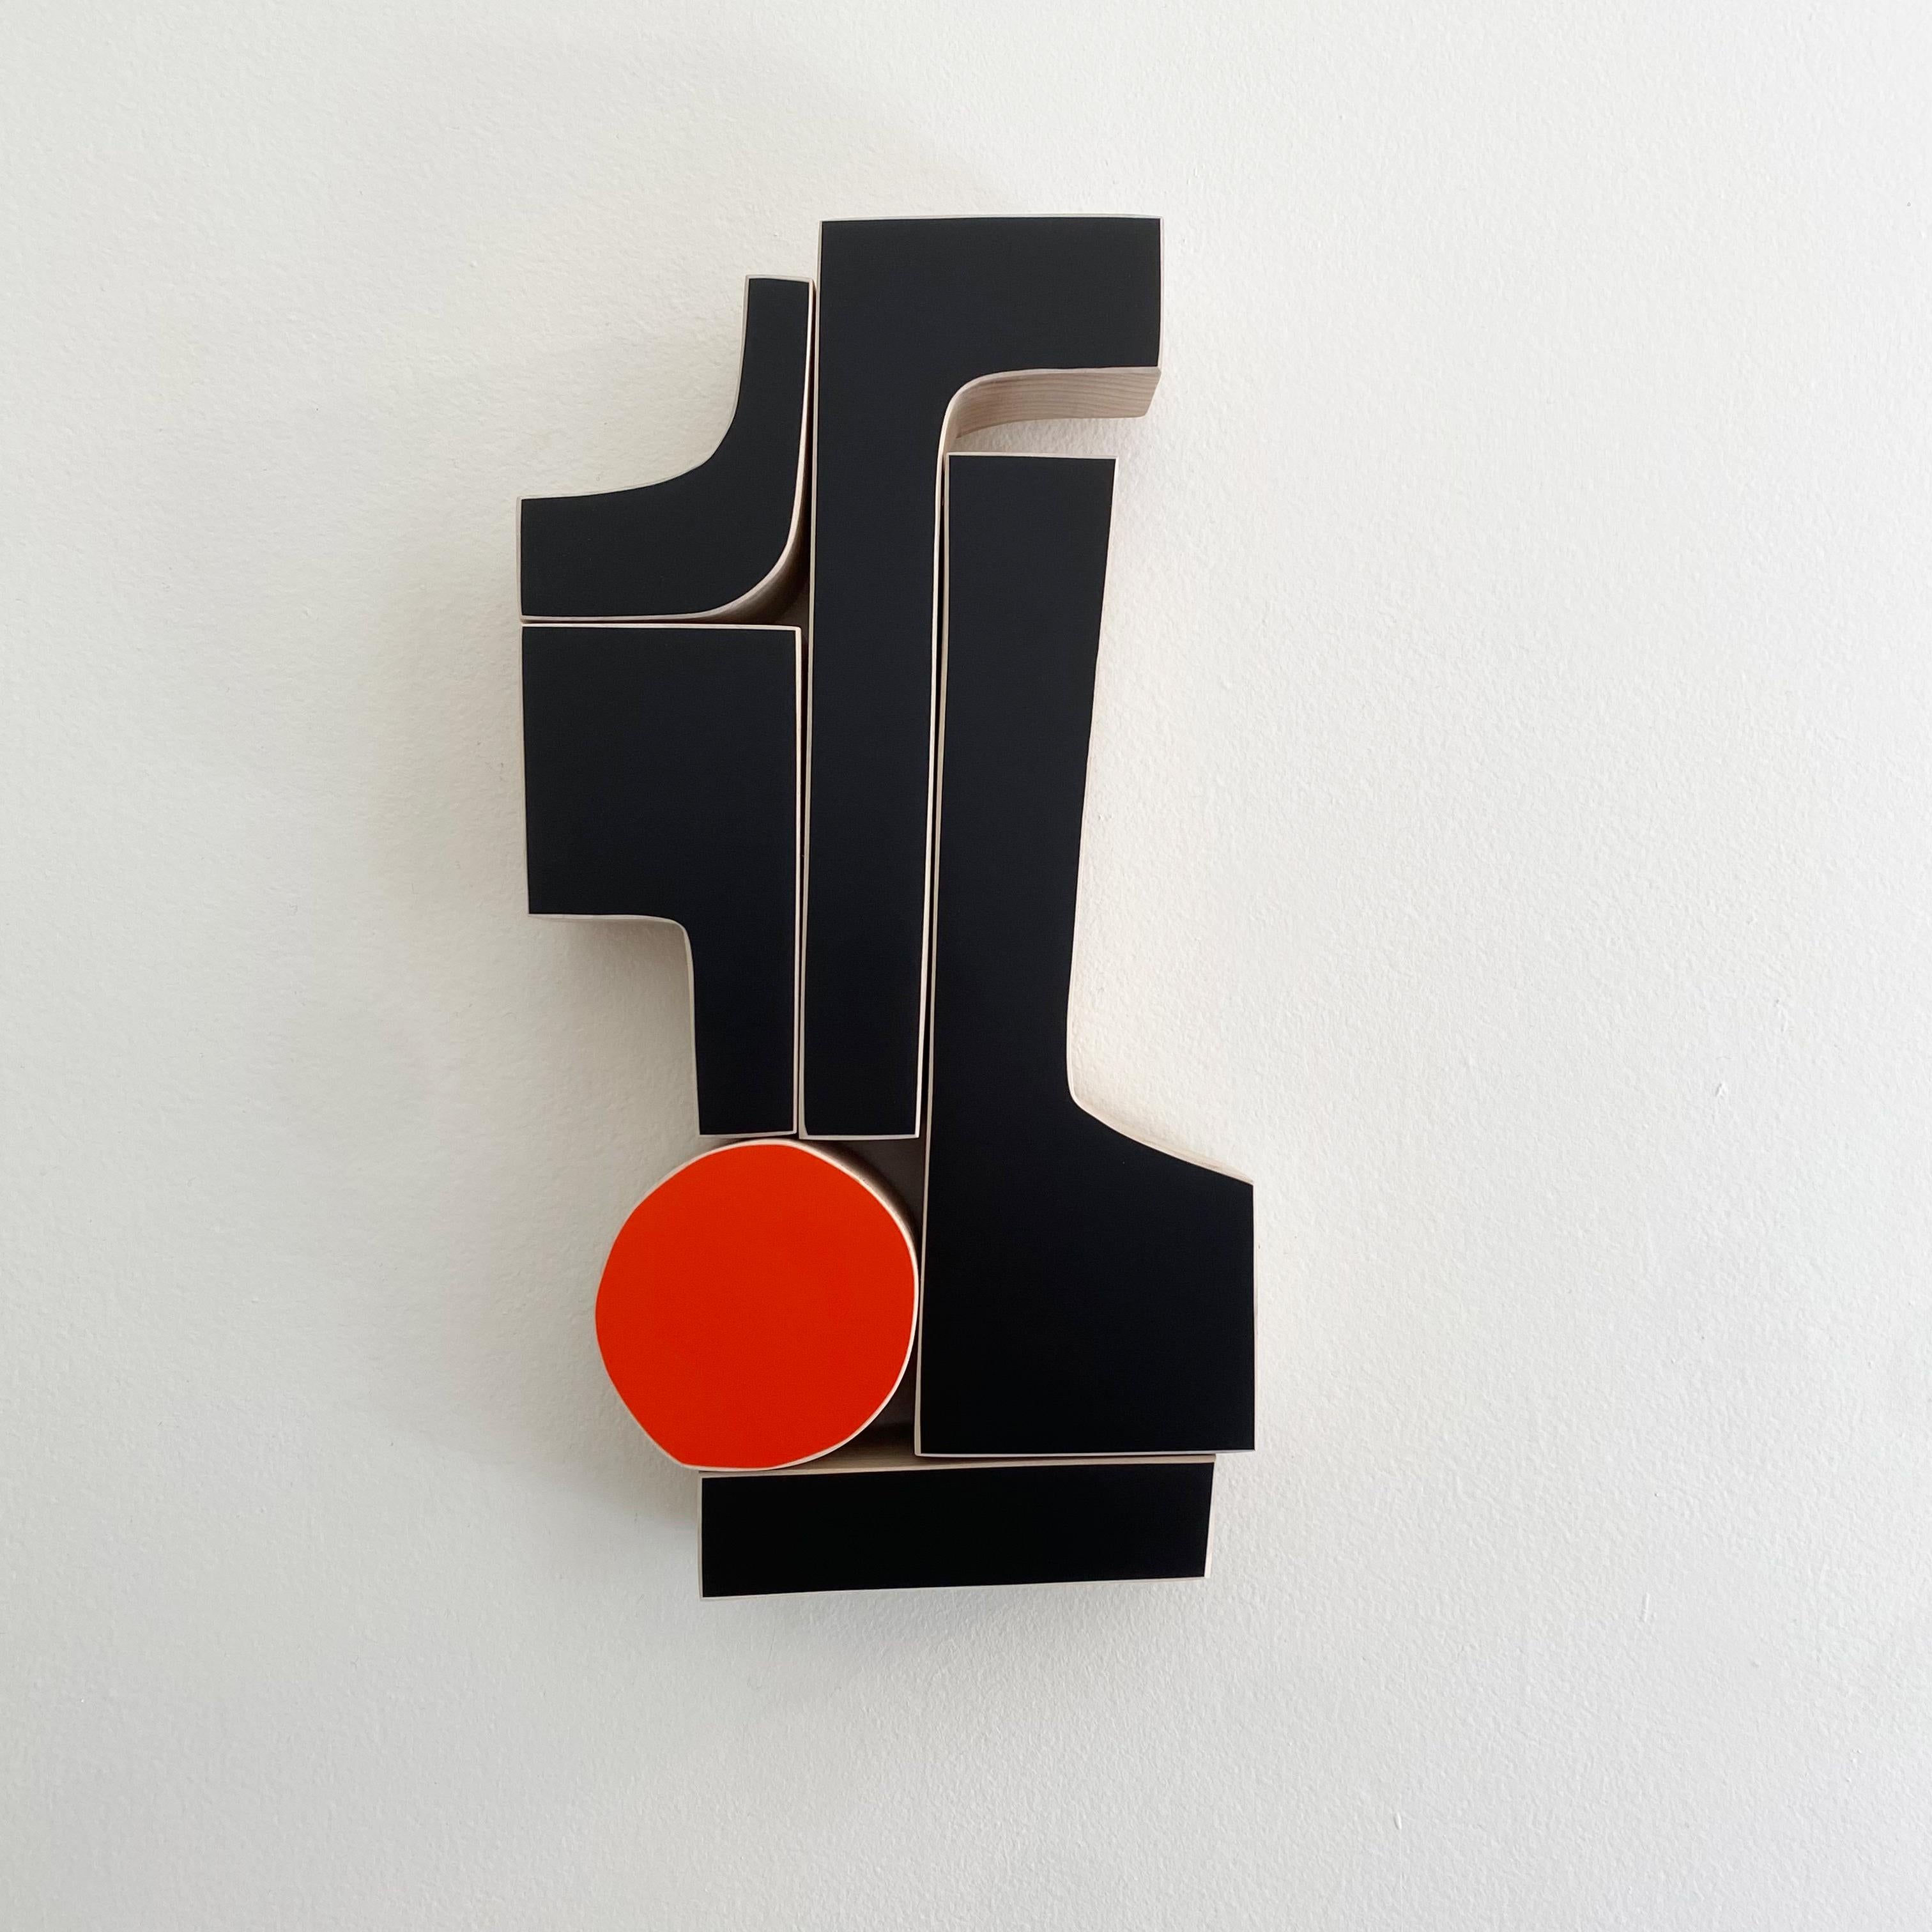 Scott Troxel Abstract Sculpture - "Elbow" Wall Sculpture mid century modern, monochrome, modernism, Bauhaus